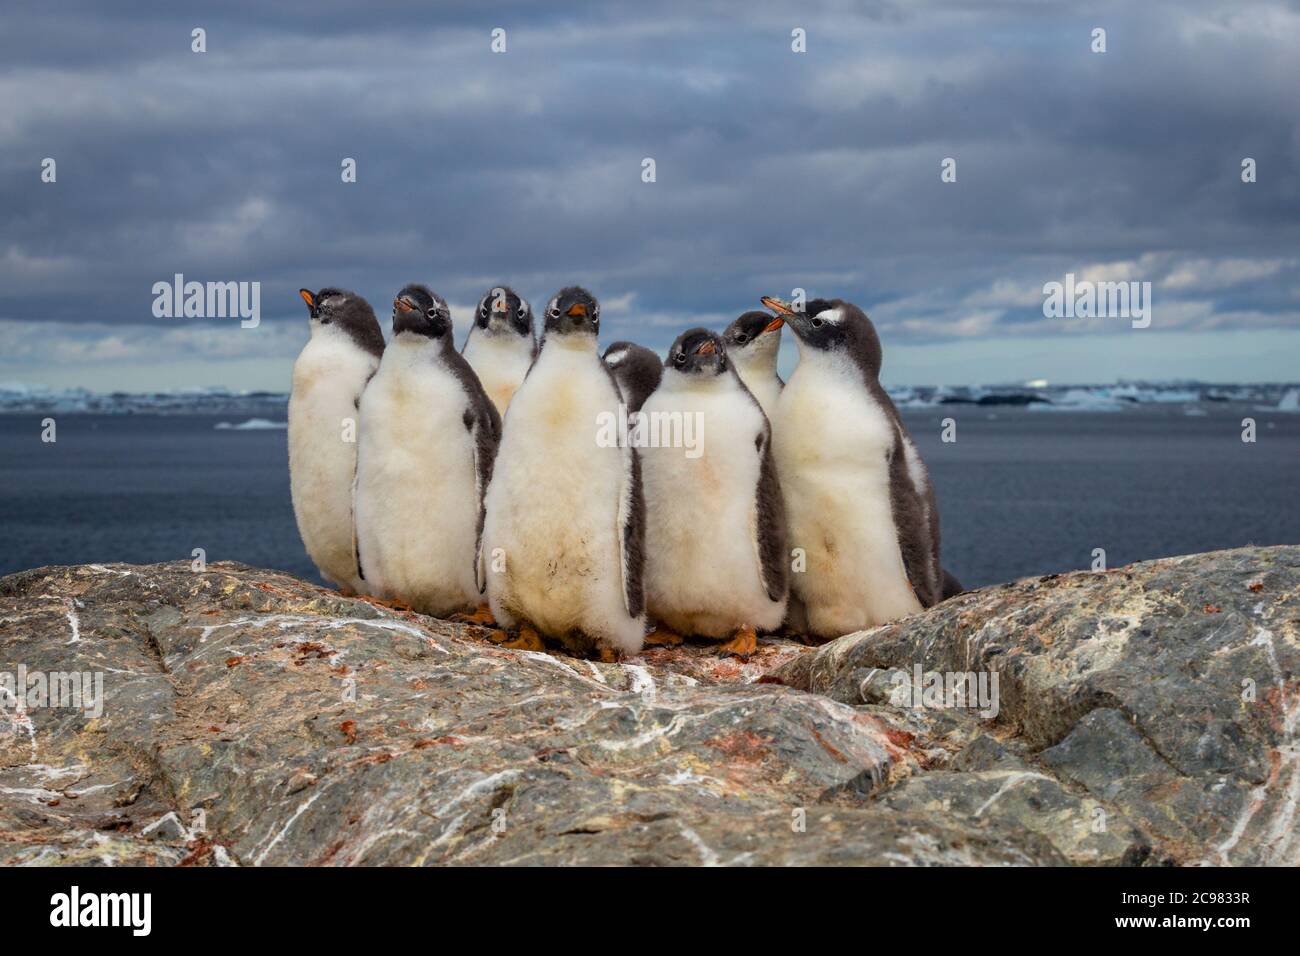 Gruppo di pinguini cazzo Gentoo sul nido di pietra in Antartide sullo sfondo del cielo scuro, la penisola Antartica. Foto Stock